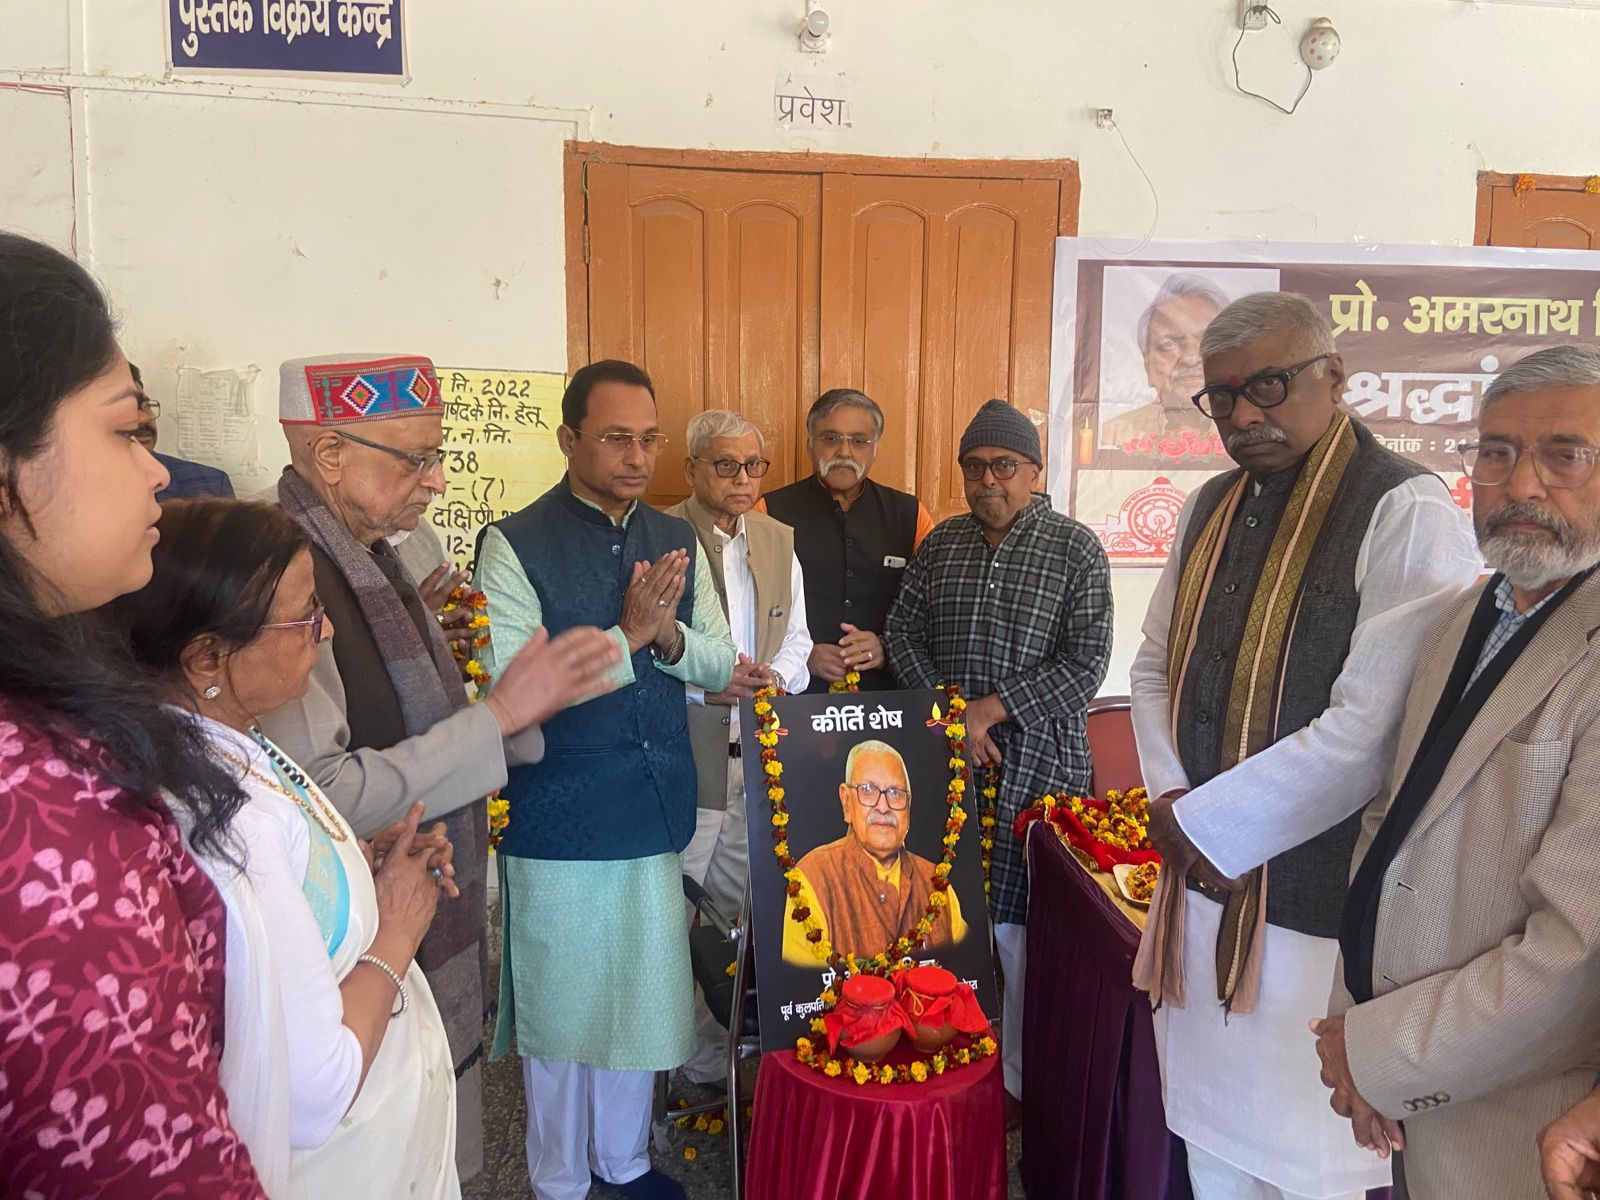 बिहार हिन्दी साहित्य सम्मेलन में दर्शनाथ रखा गया प्रो अमरनाथ सिन्हा का अस्थि-कलश, आयोजित हुई श्रद्धांजलि सभा, 